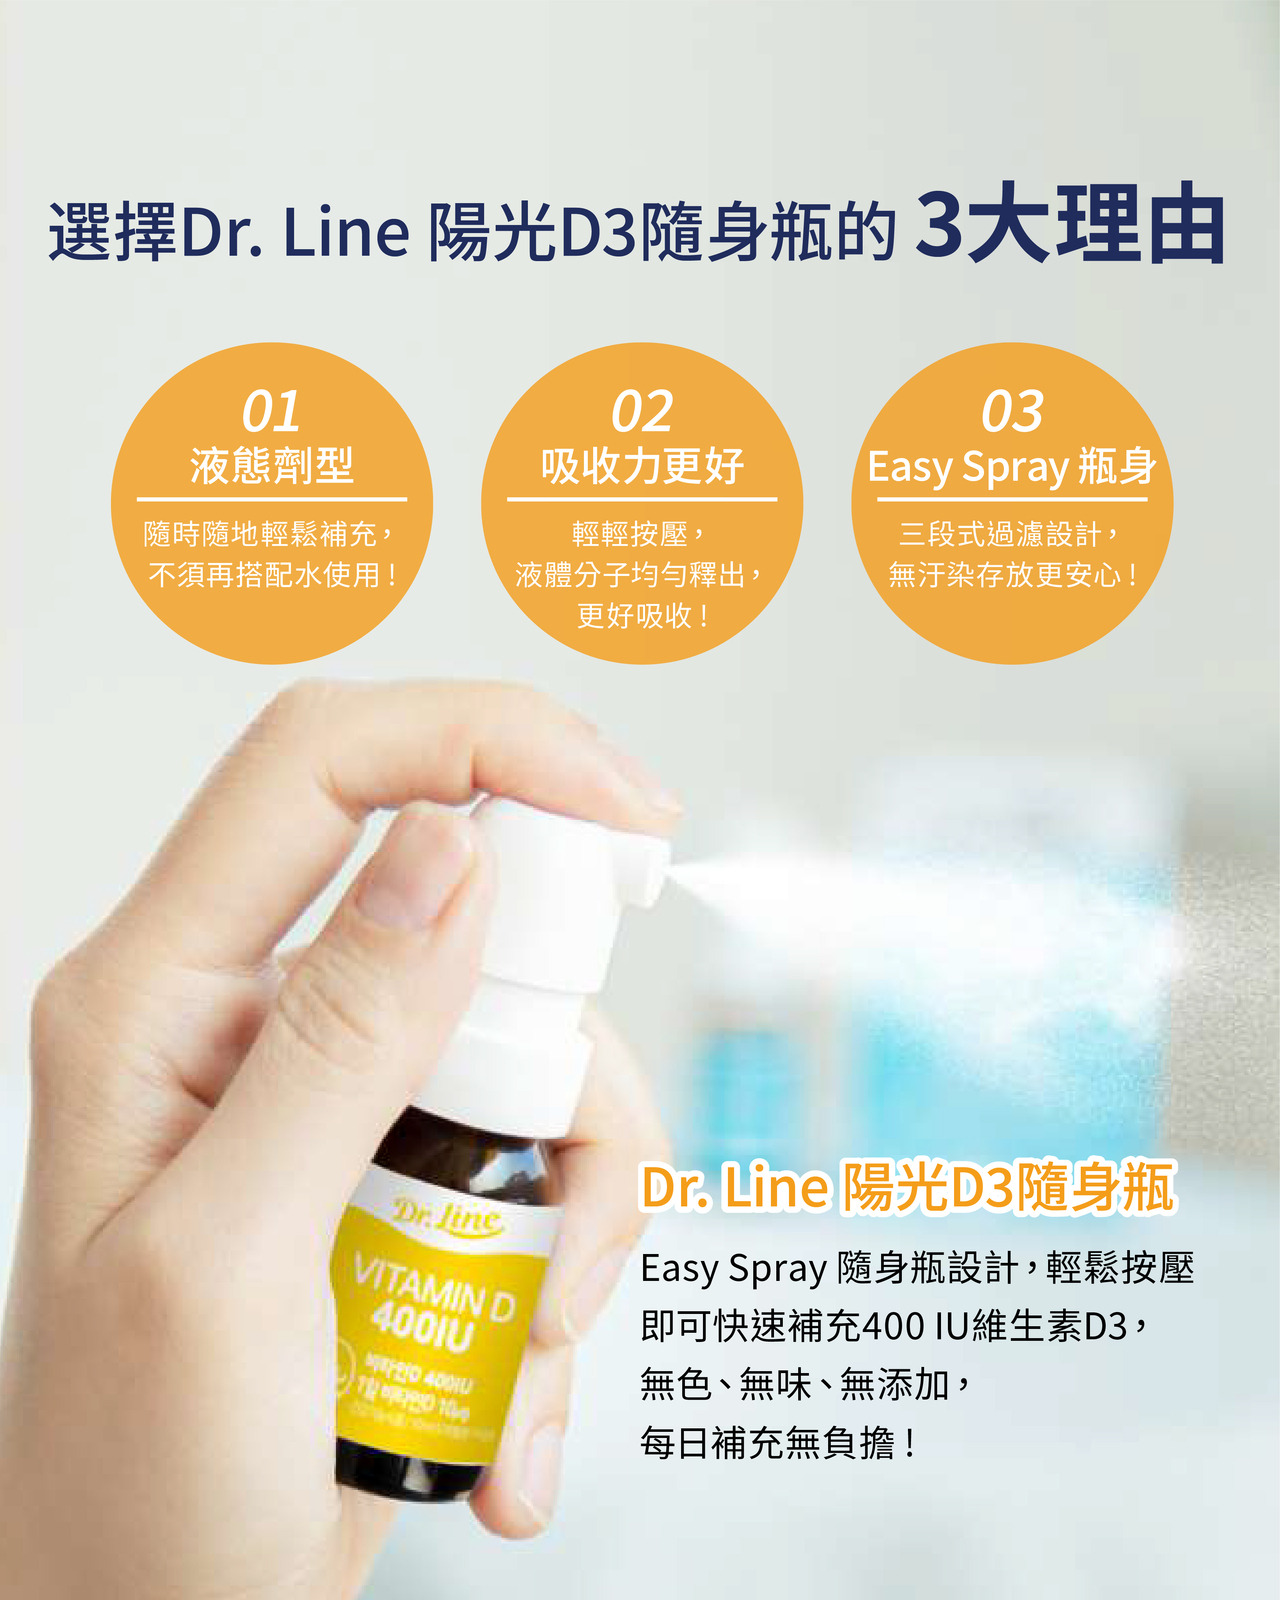 Dr. Line 陽光D3隨身瓶